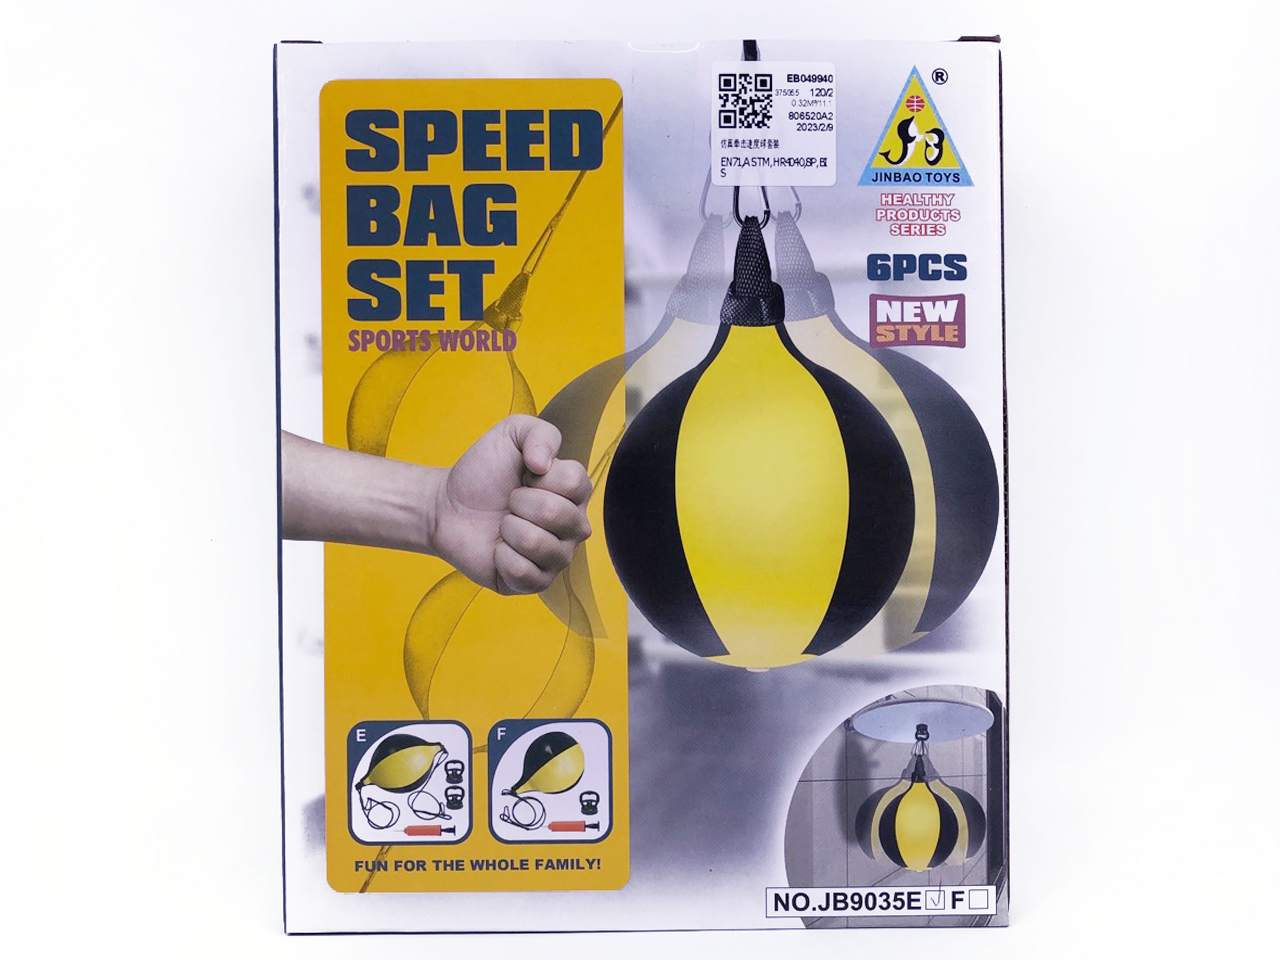 Speed Bag Set toys